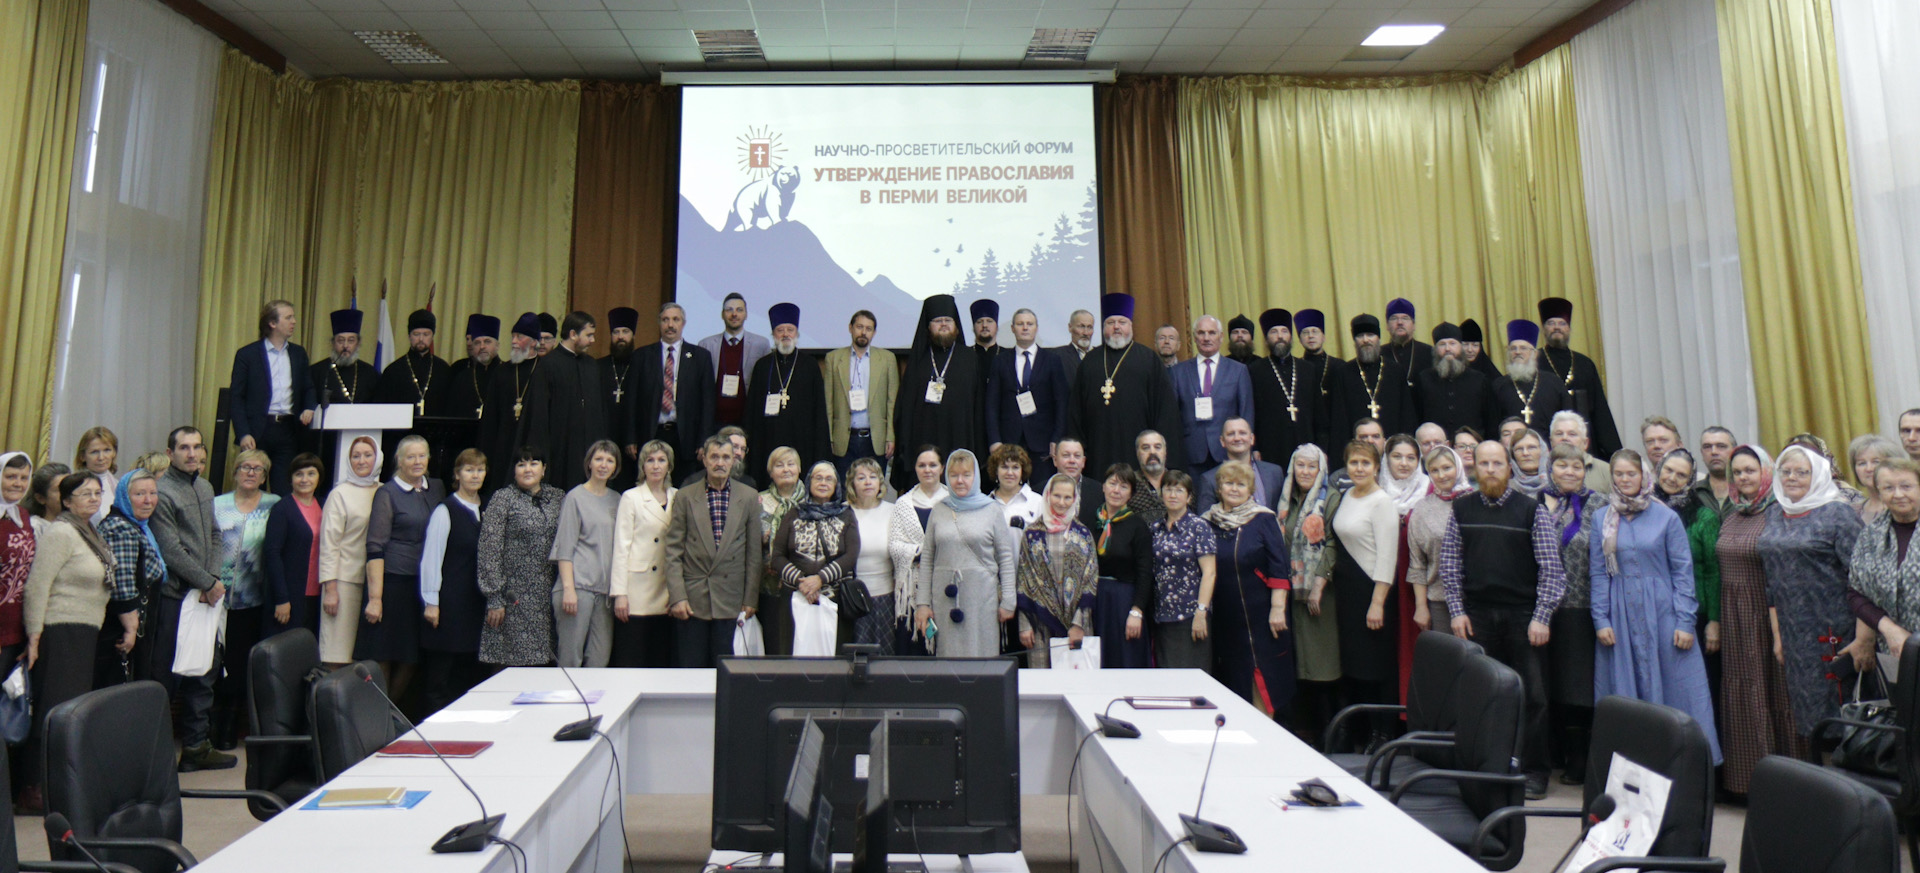 Участие в научно-просветительском форуме "Утверждение православия в Перми Великой"